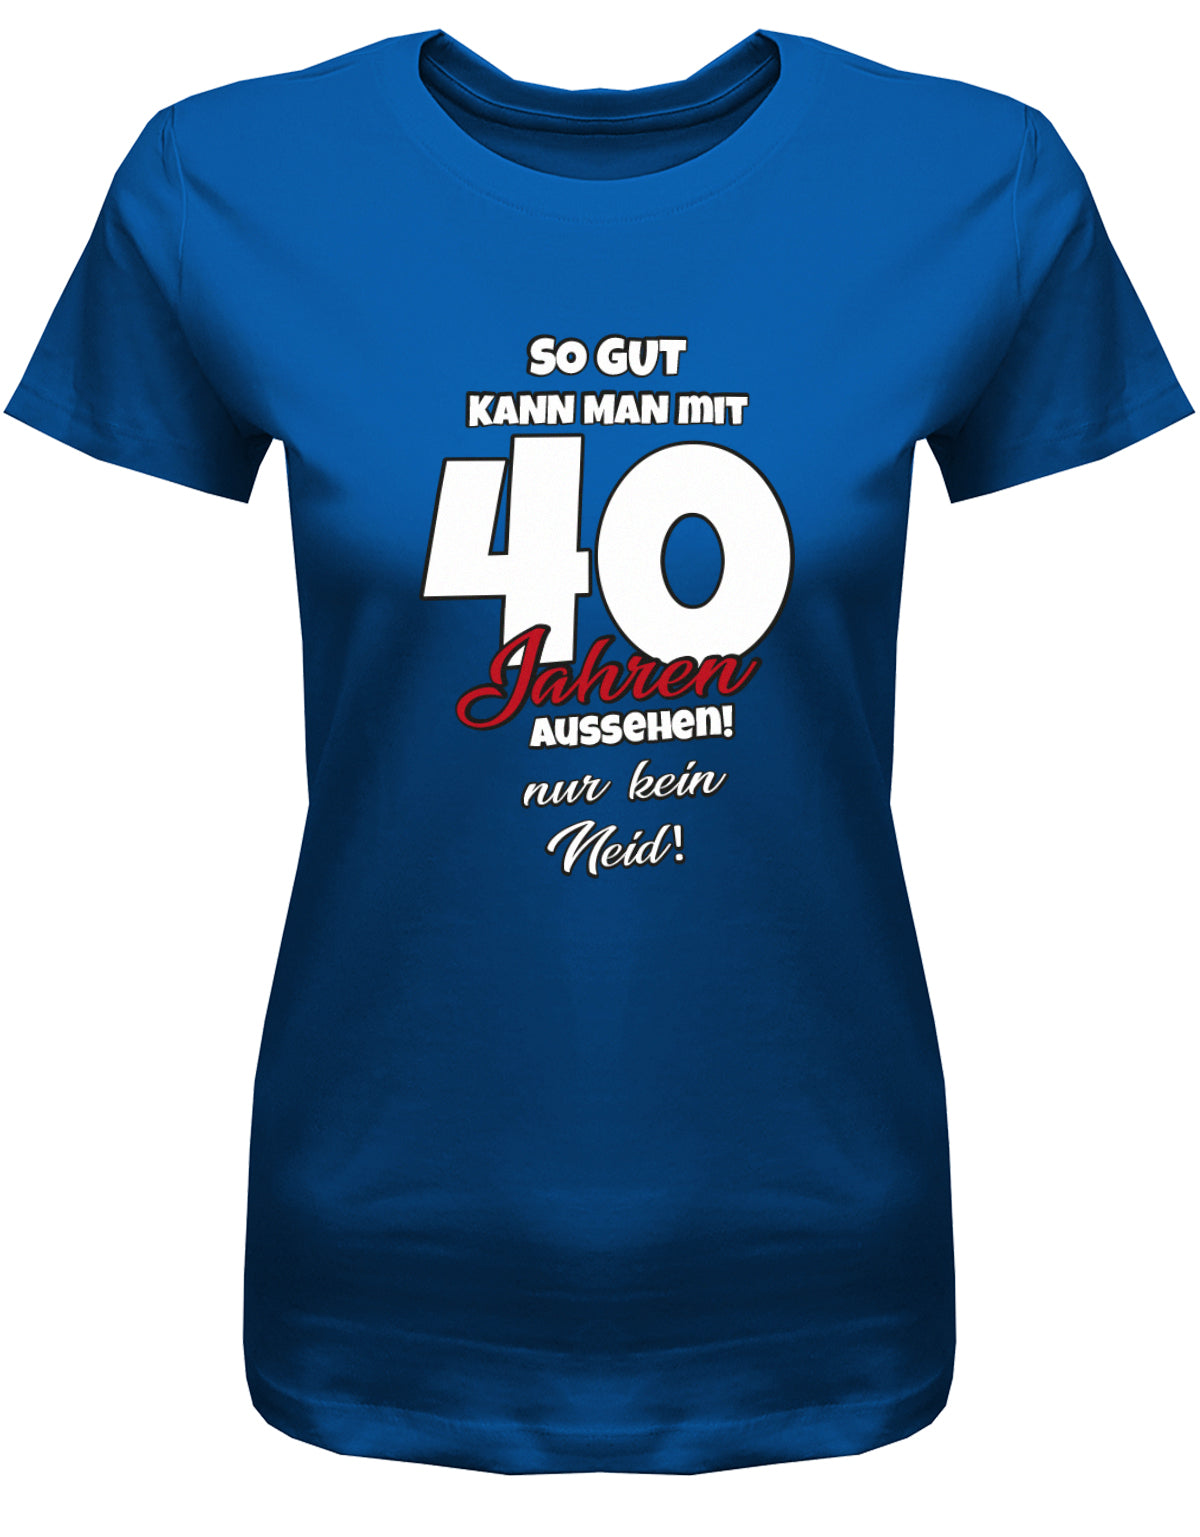 Lustiges T-Shirt zum 40 Geburtstag für die Frau Bedruckt mit So gut kann man mit 40 Jahren aussehen! Nur kein Neid! royalblau